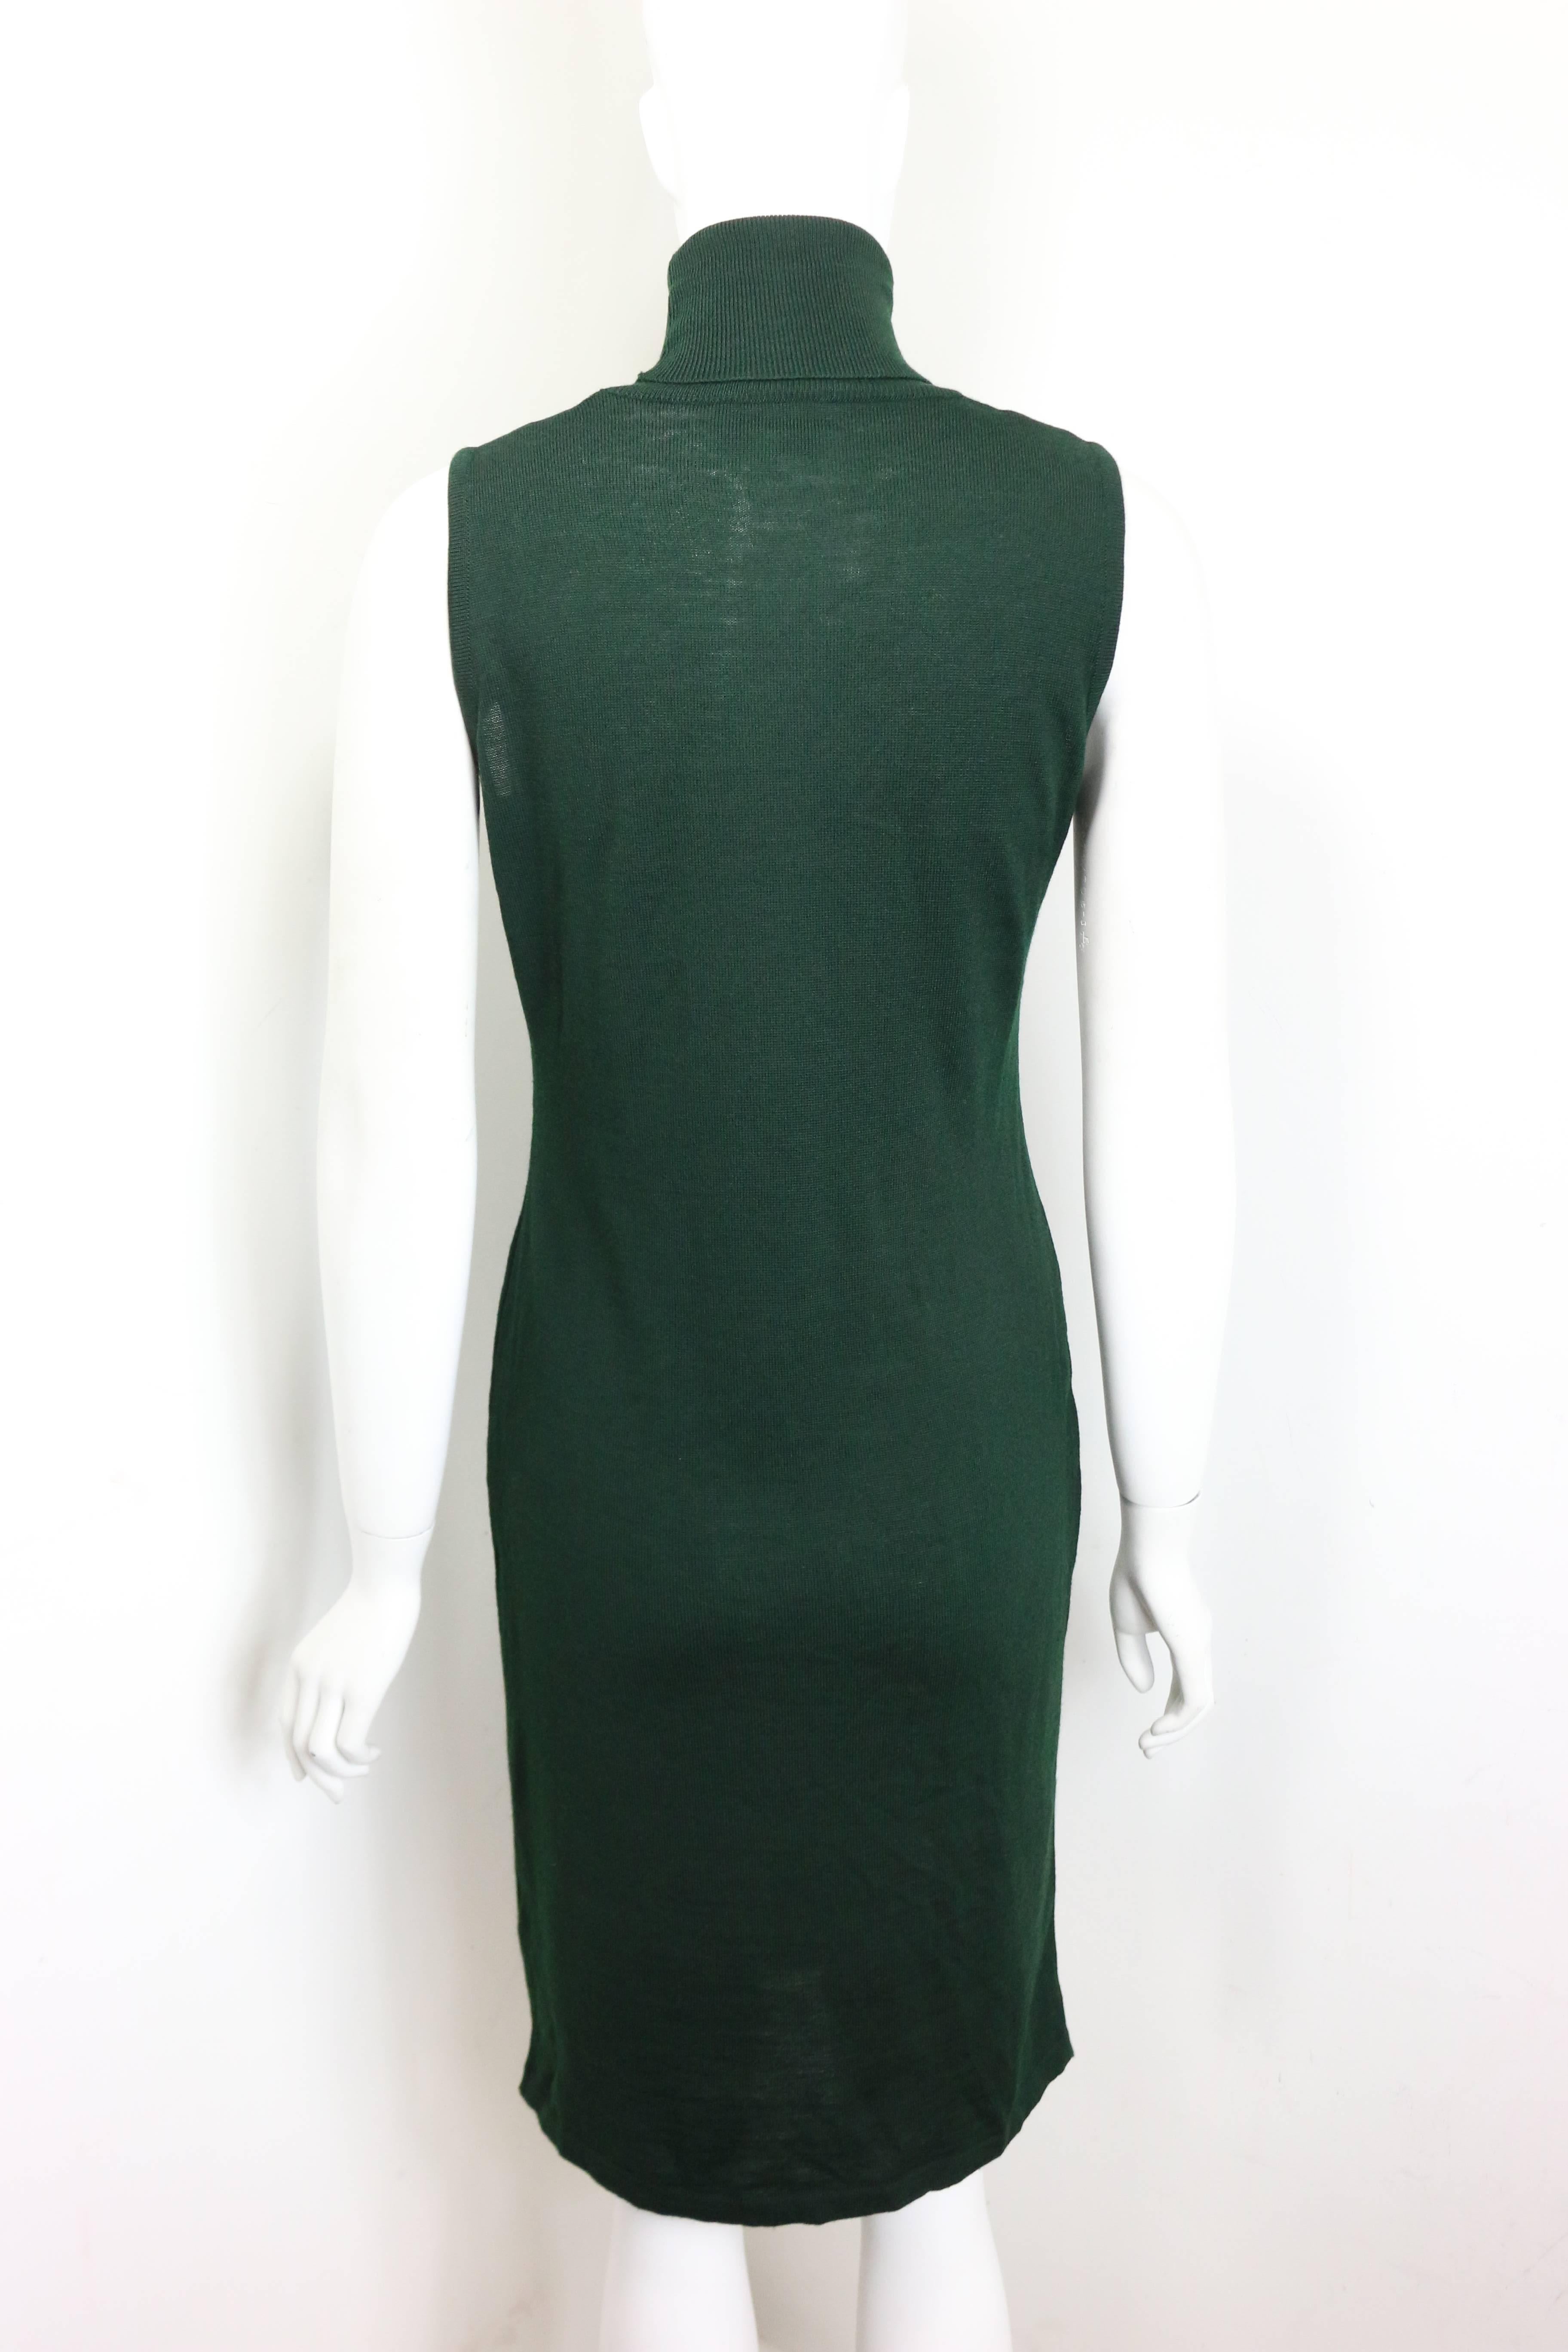 - Vintage 90s Versace Jeans Couture robe en laine verte sans manches à col roulé. Cette robe simple et classique vert foncé est subtile pour la journée ou pour une soirée. 

- Fabriqué en Italie.

- Taille M. 

- Épaule : 11 pouces. Poitrine : 28